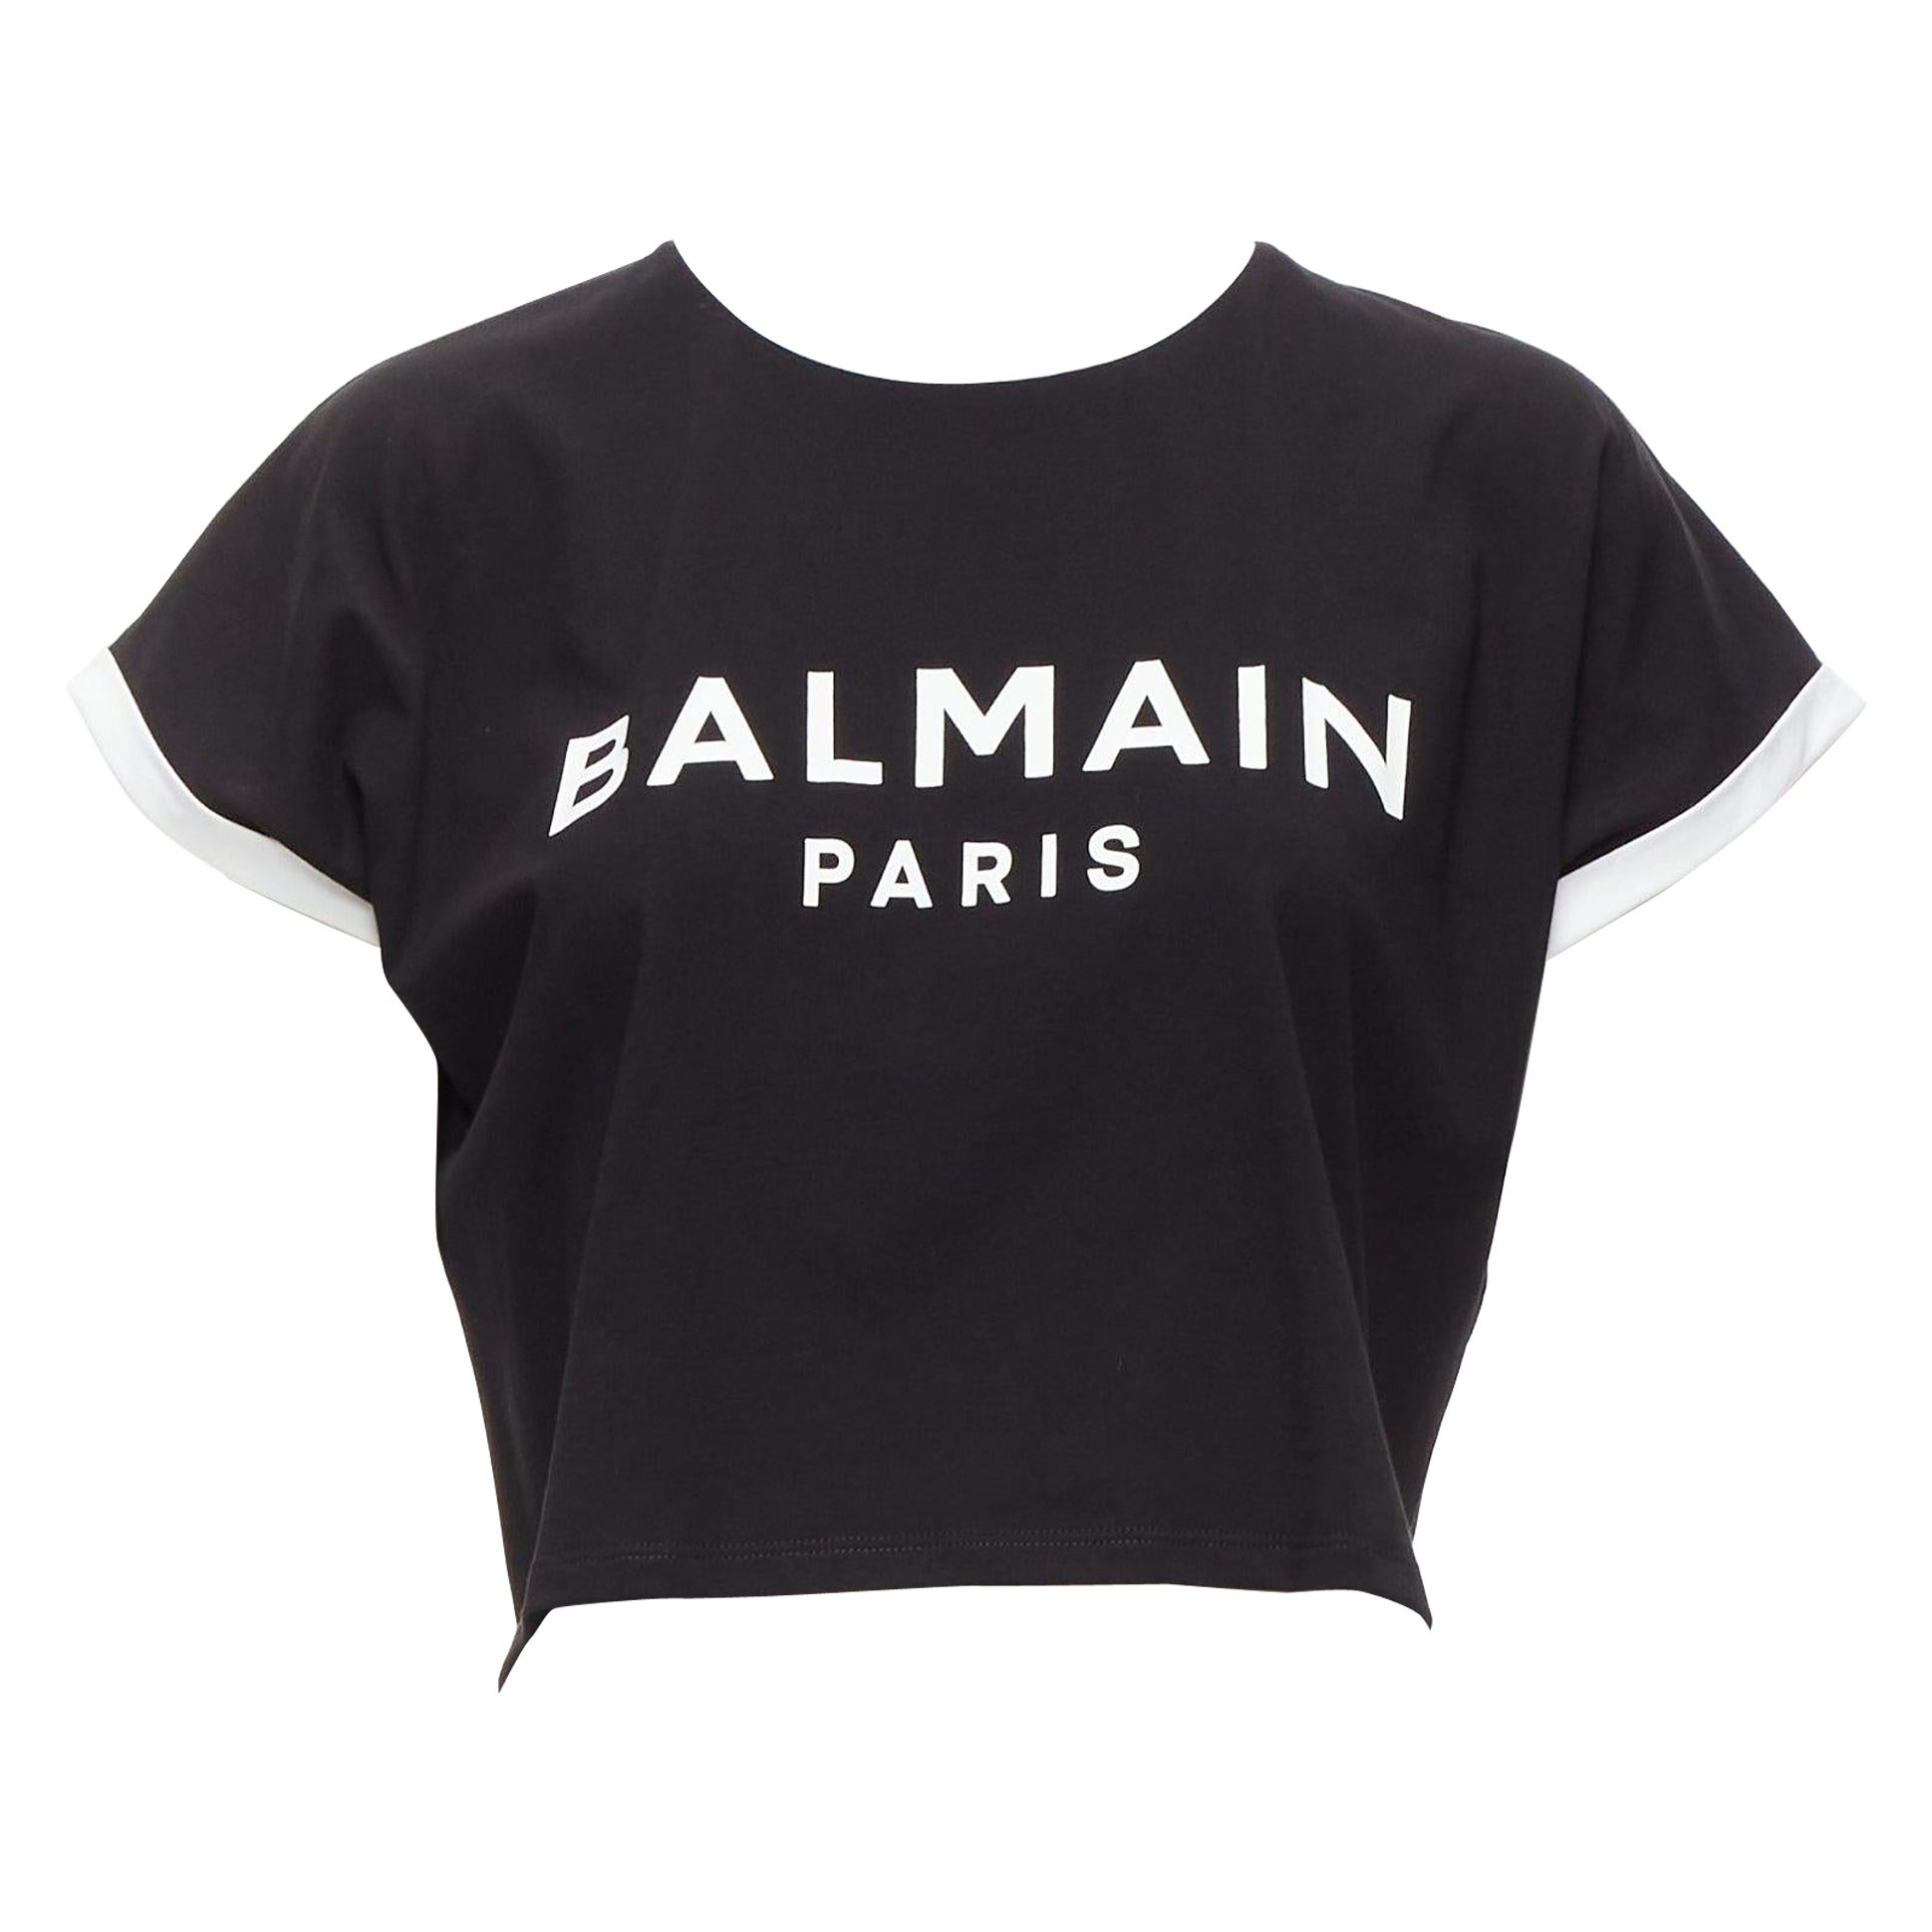 How do Balmain shirts fit?